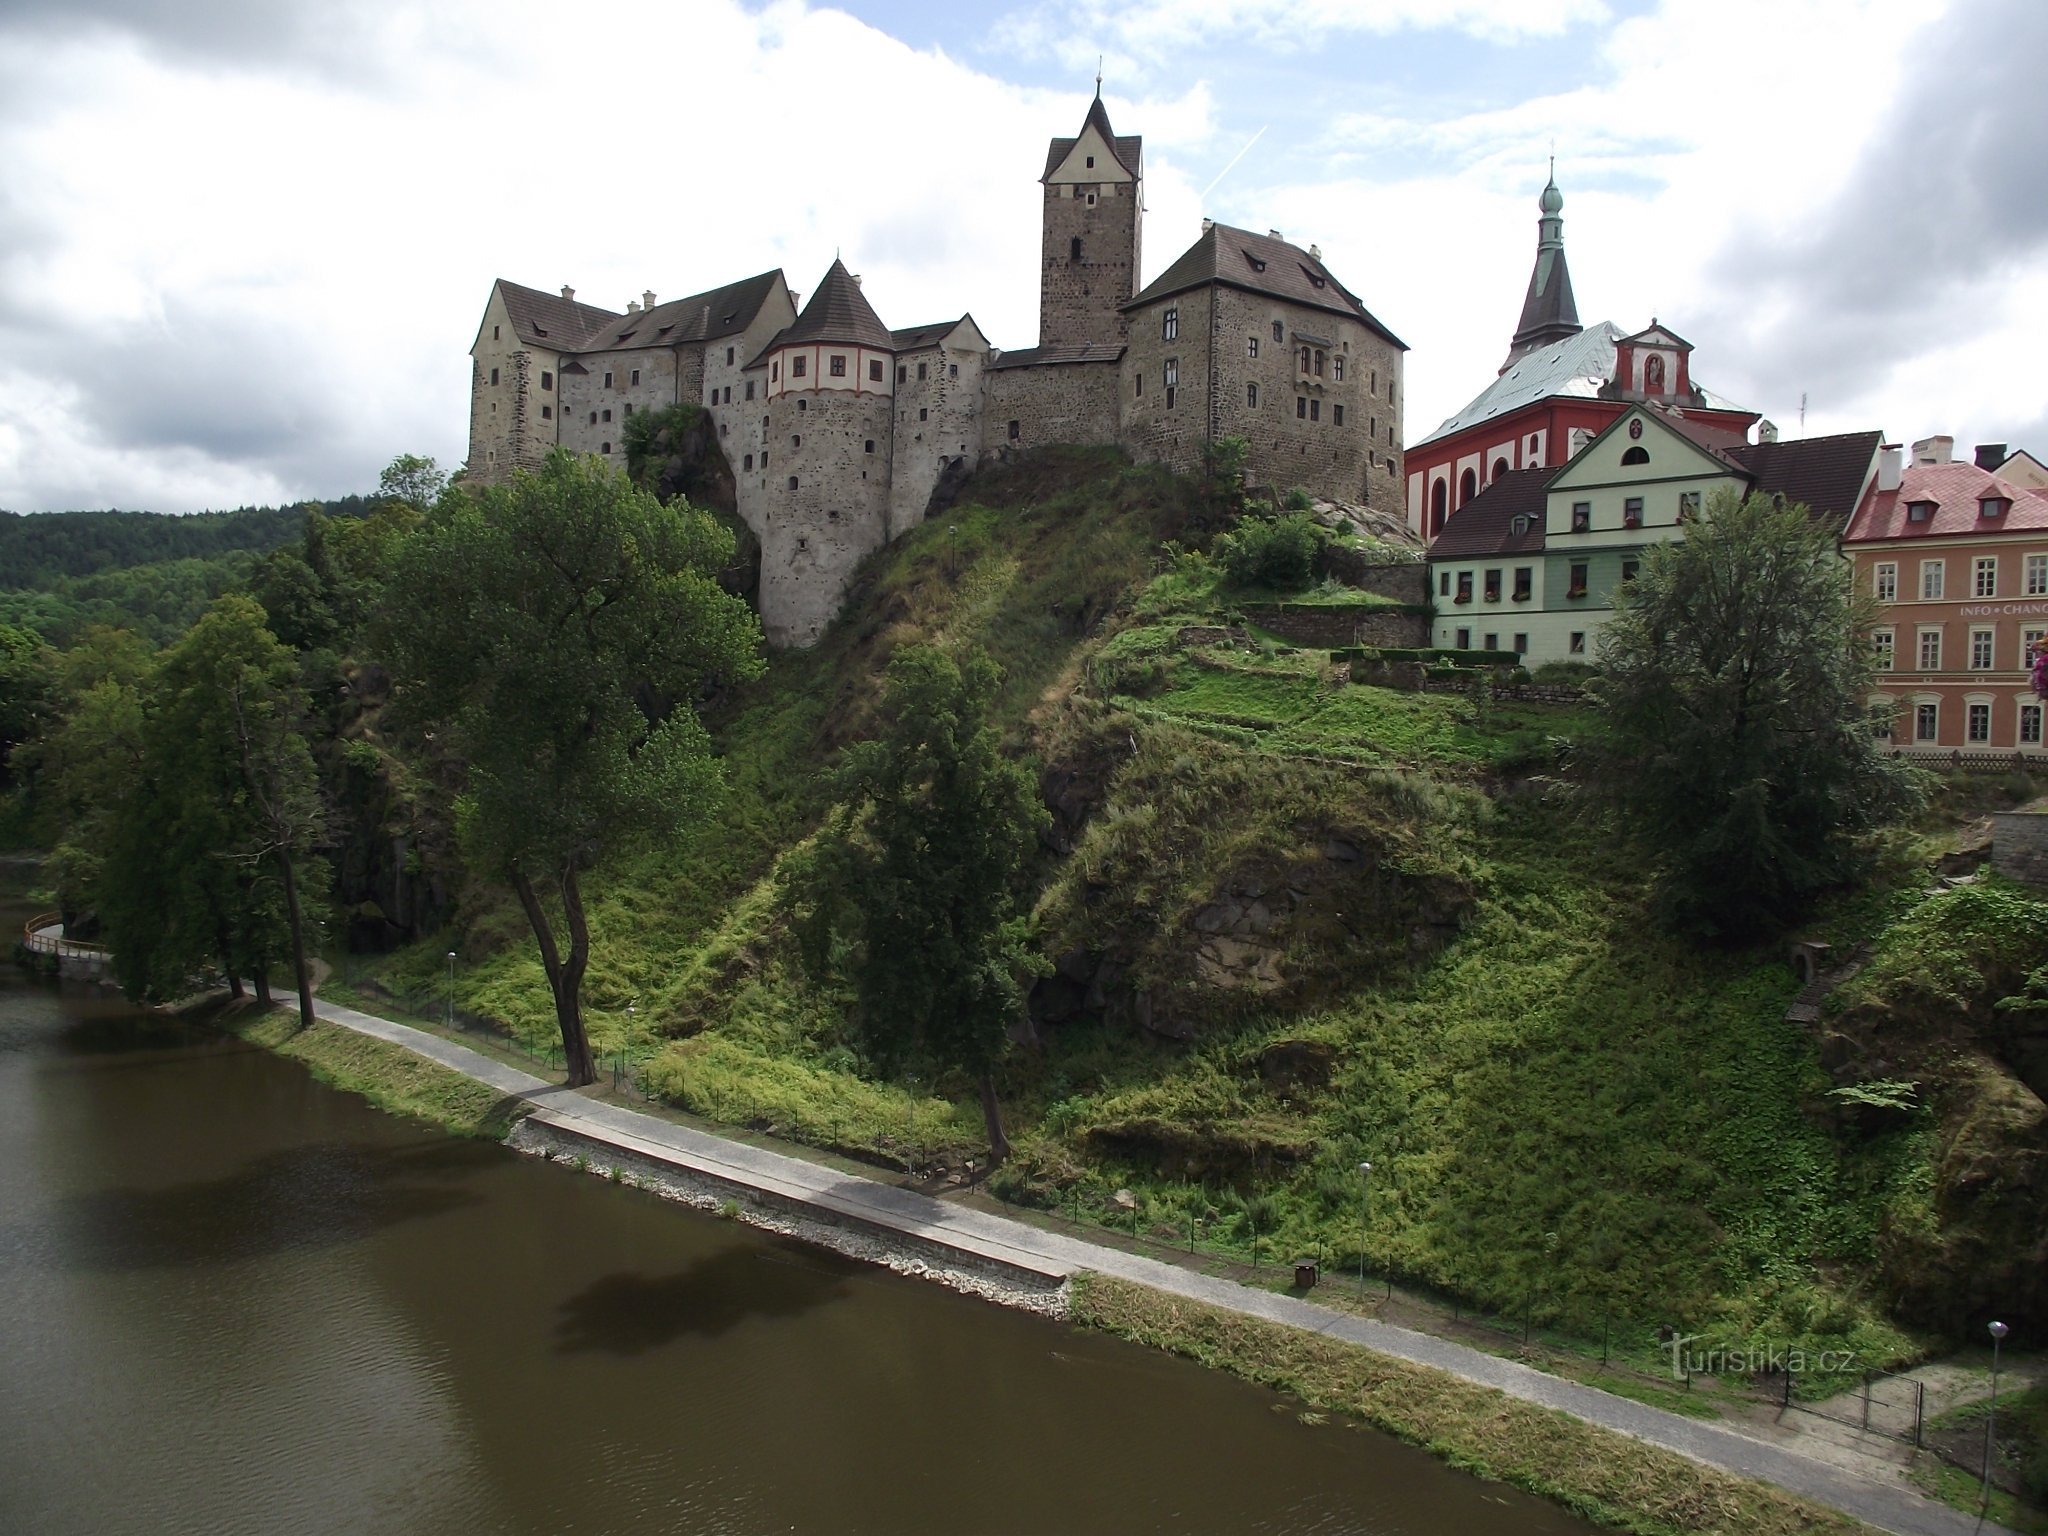 Na Loket, atrás do romântico castelo do rei Venceslau I.